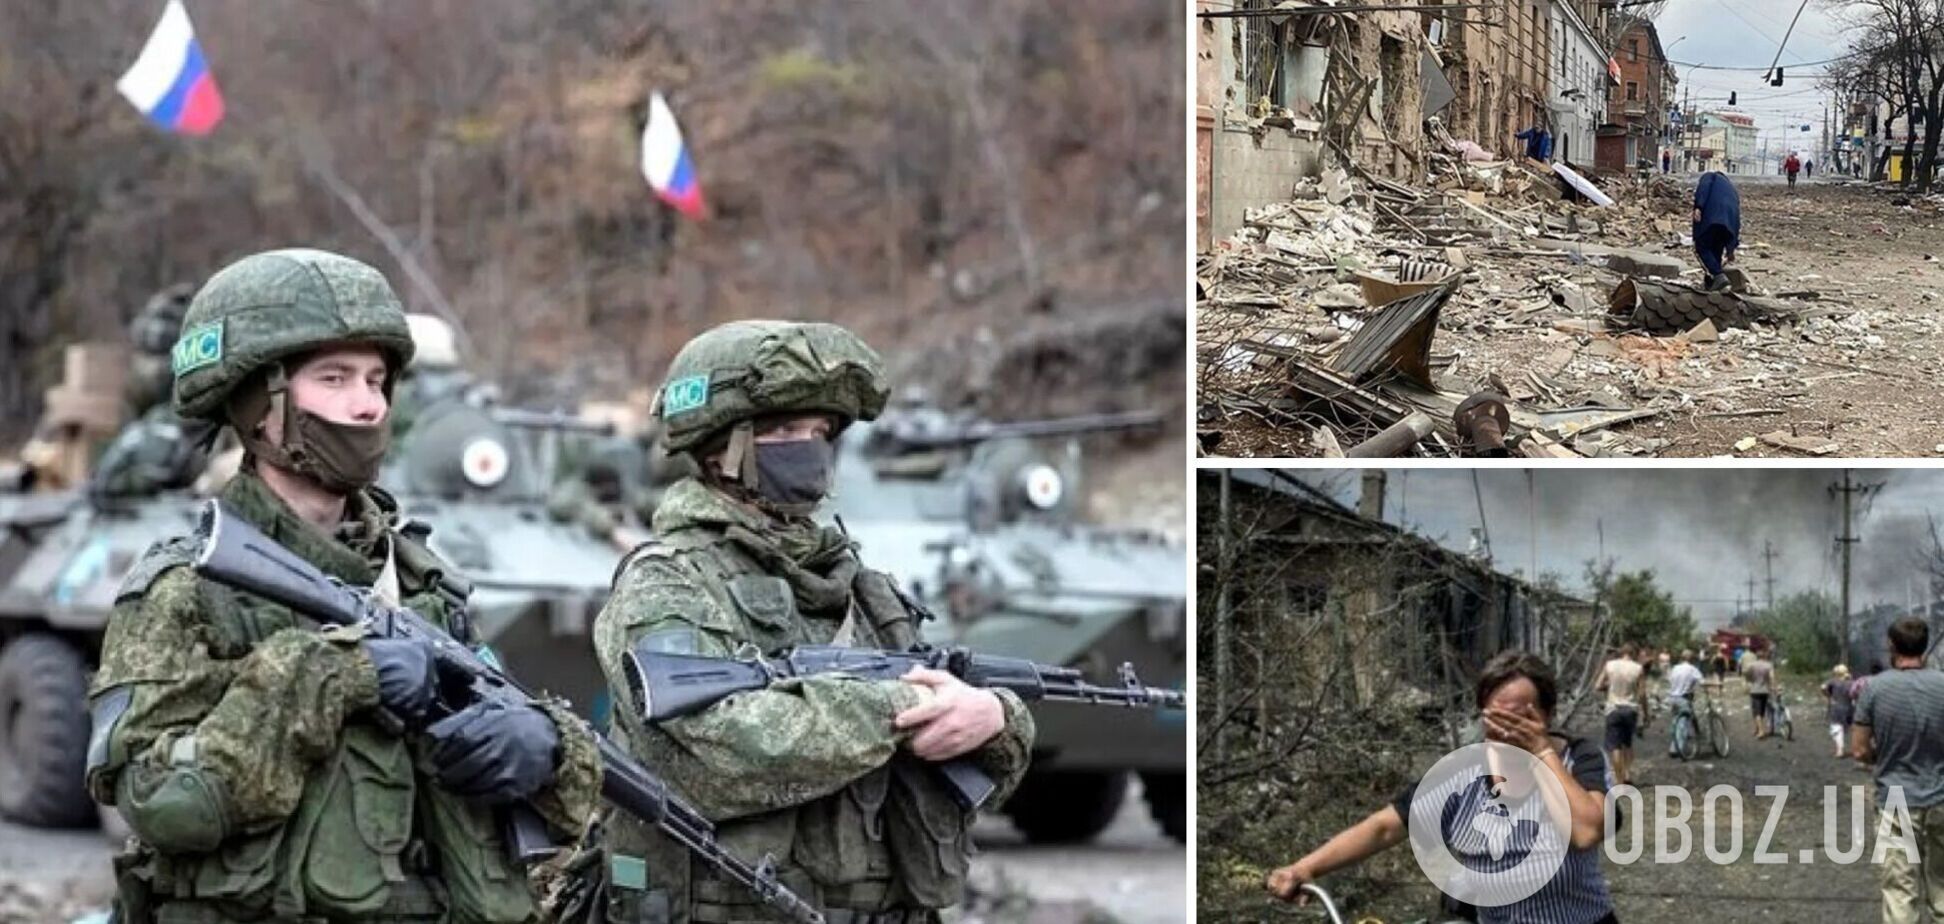 Российские оккупанты убили 6 мирных жителей в Донецкой области, девять человек ранены, - глава ОВА